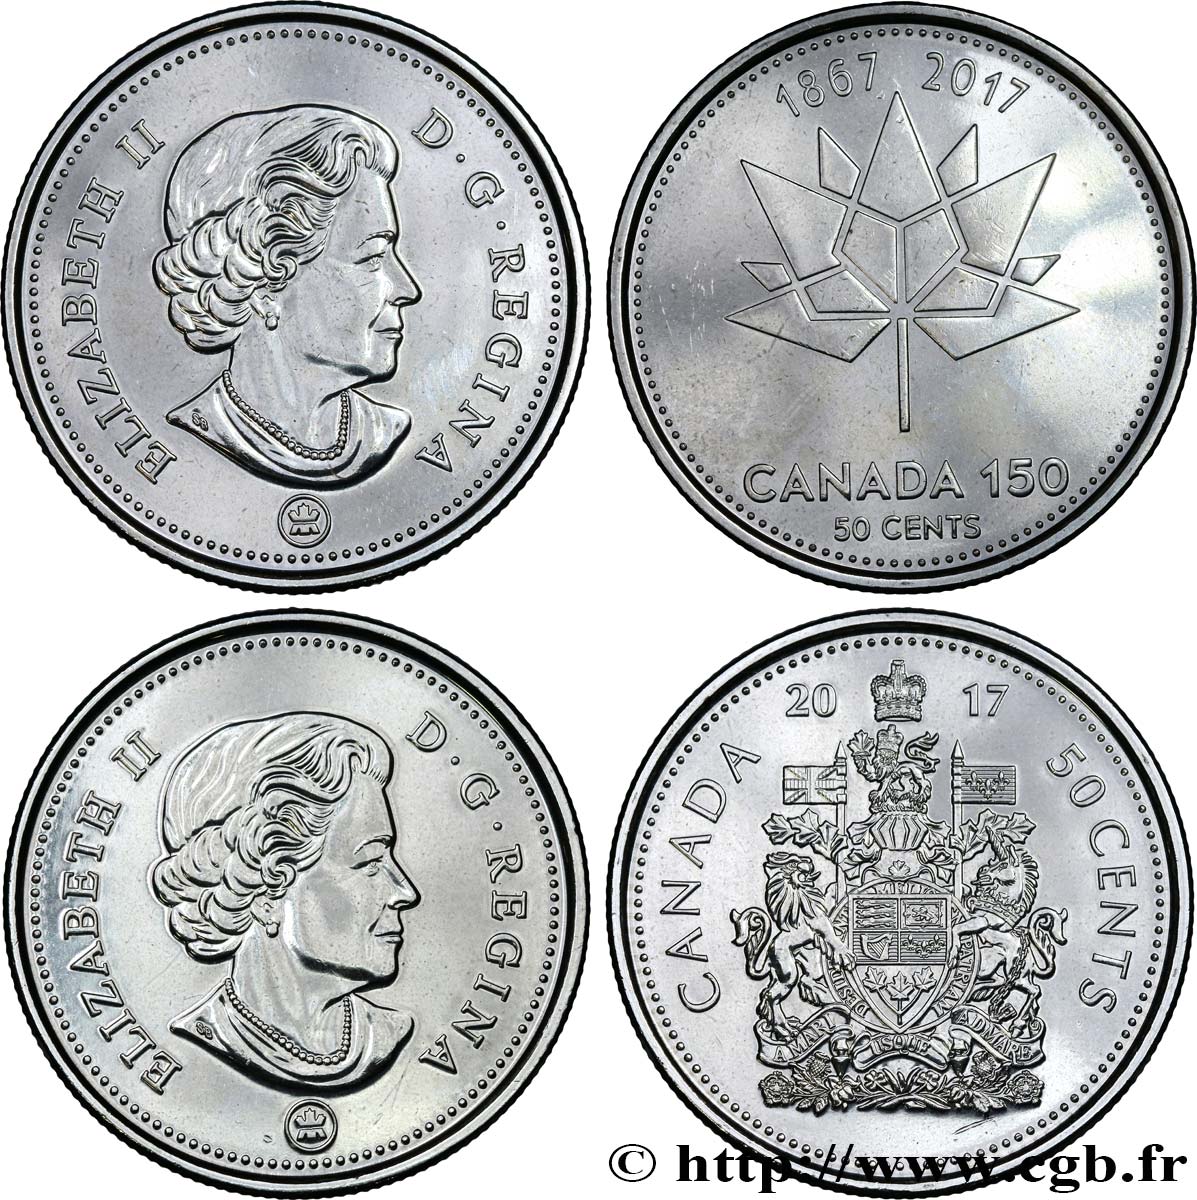 KANADA Lot de 2 monnaies de 50 Cents 150 ans du Canada 2017  ST 